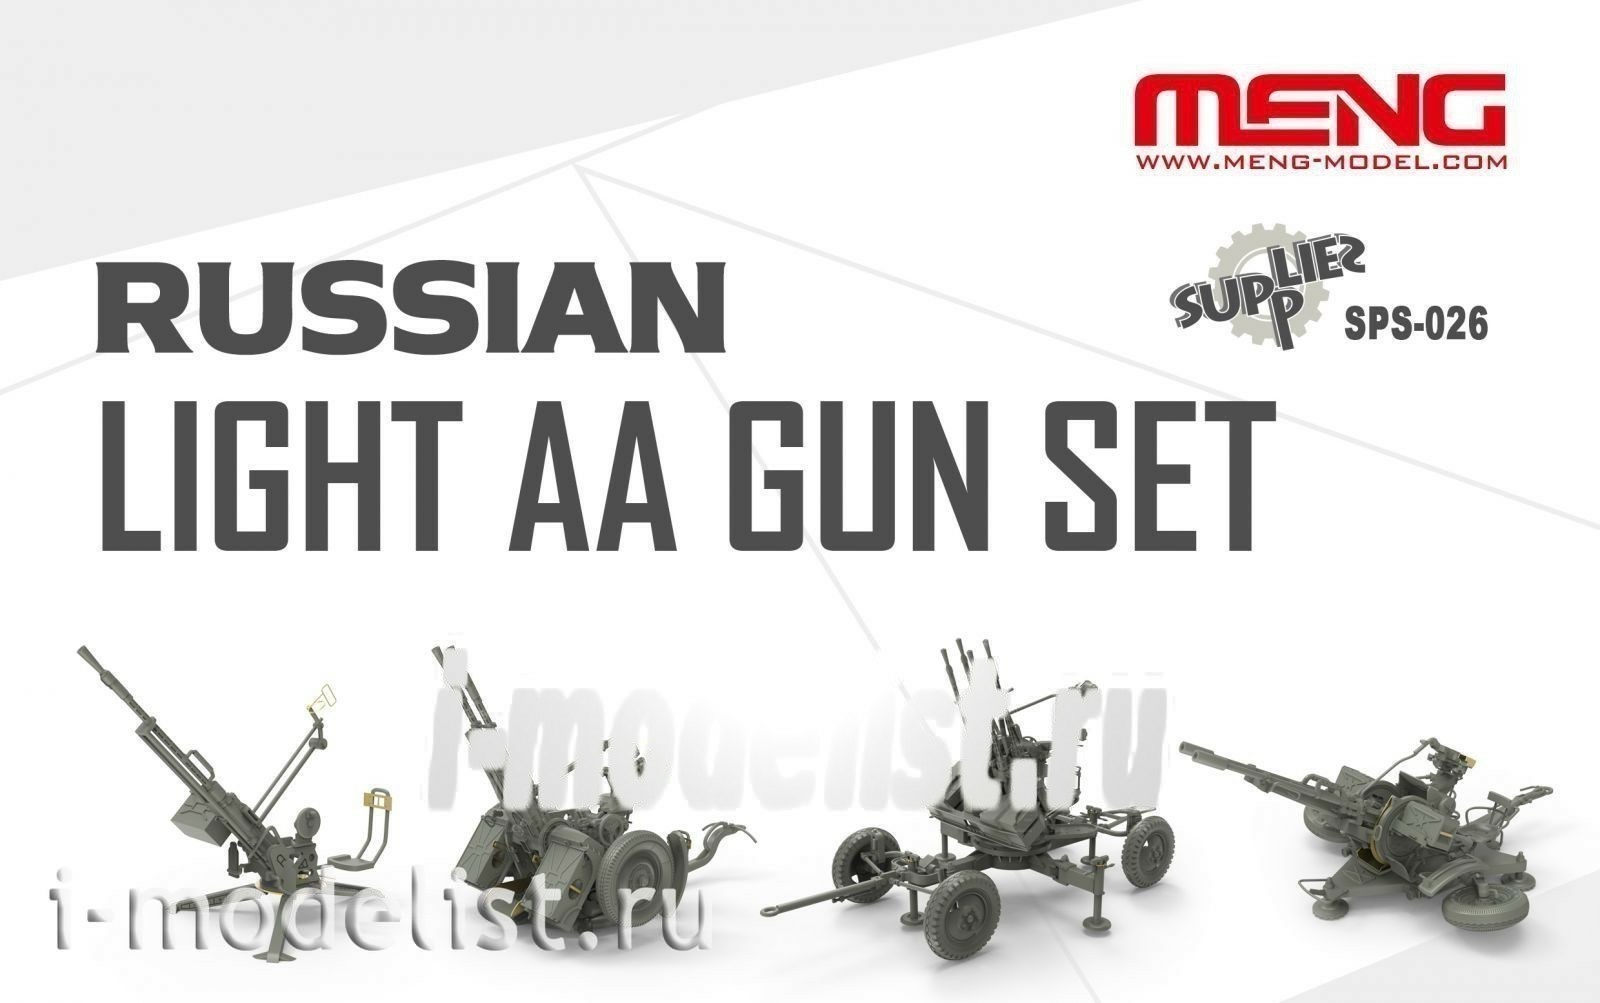 SPS-026 Meng 1/35 Russian Light AA GUN